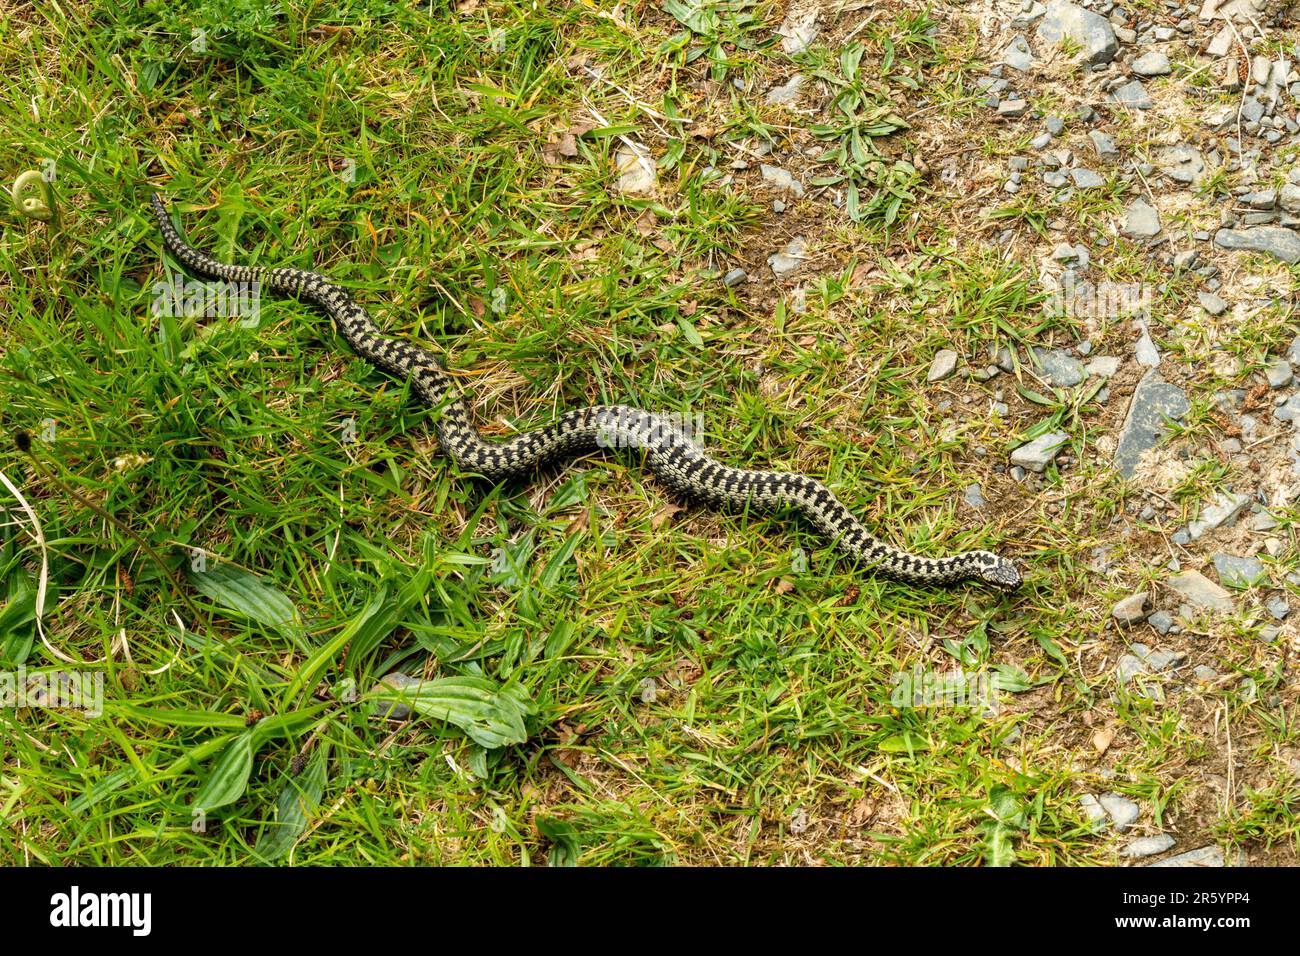 Lange gemeine europäische Schlange (Vipera berus) mit charakteristischen Zickzackmarkierungen, die den Fußweg auf der Isle of Skye im Mai überqueren, Schottland, Vereinigtes Königreich Stockfoto